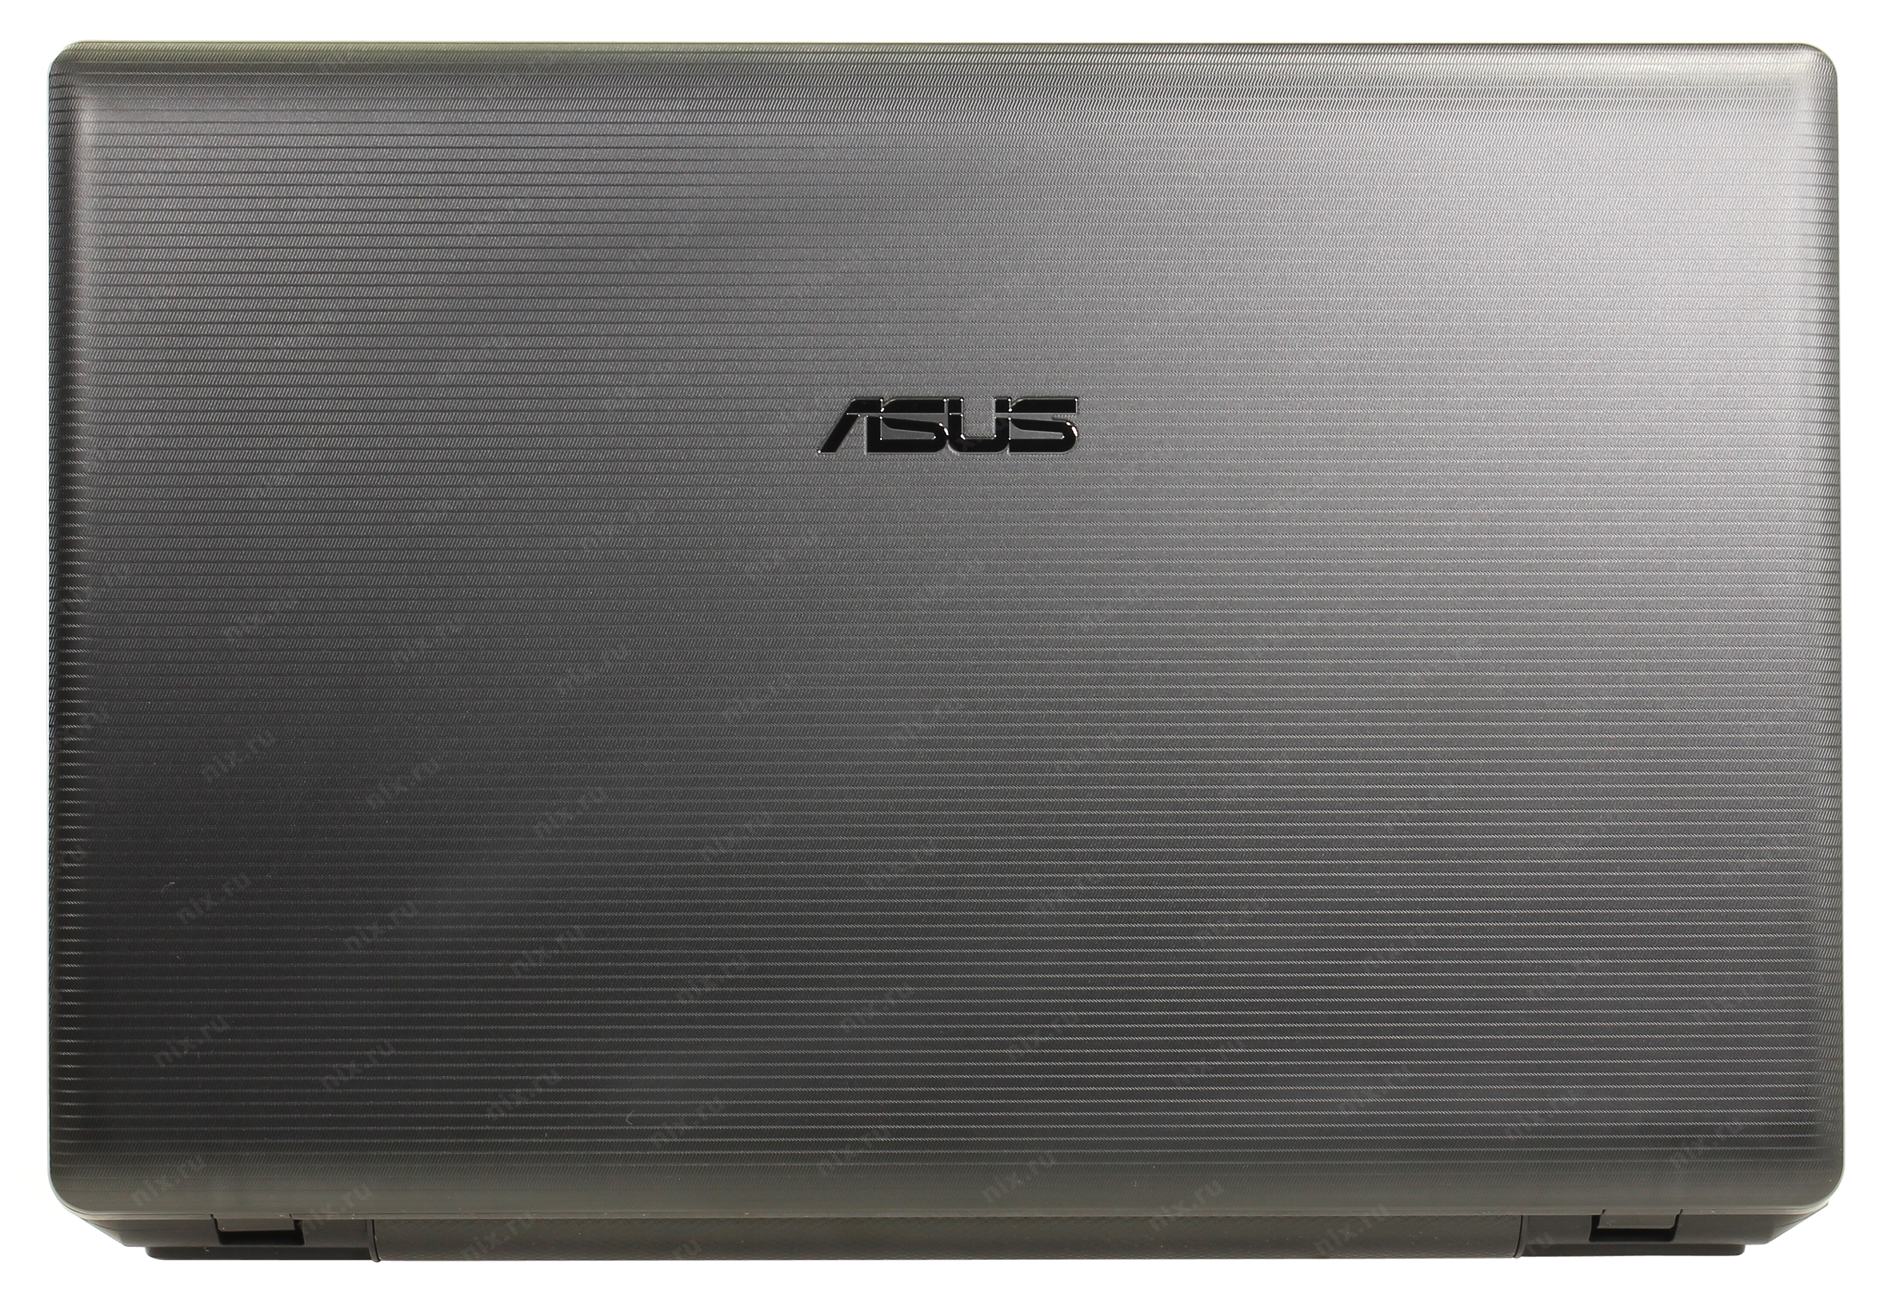 Ноутбук Asus X75a Цена